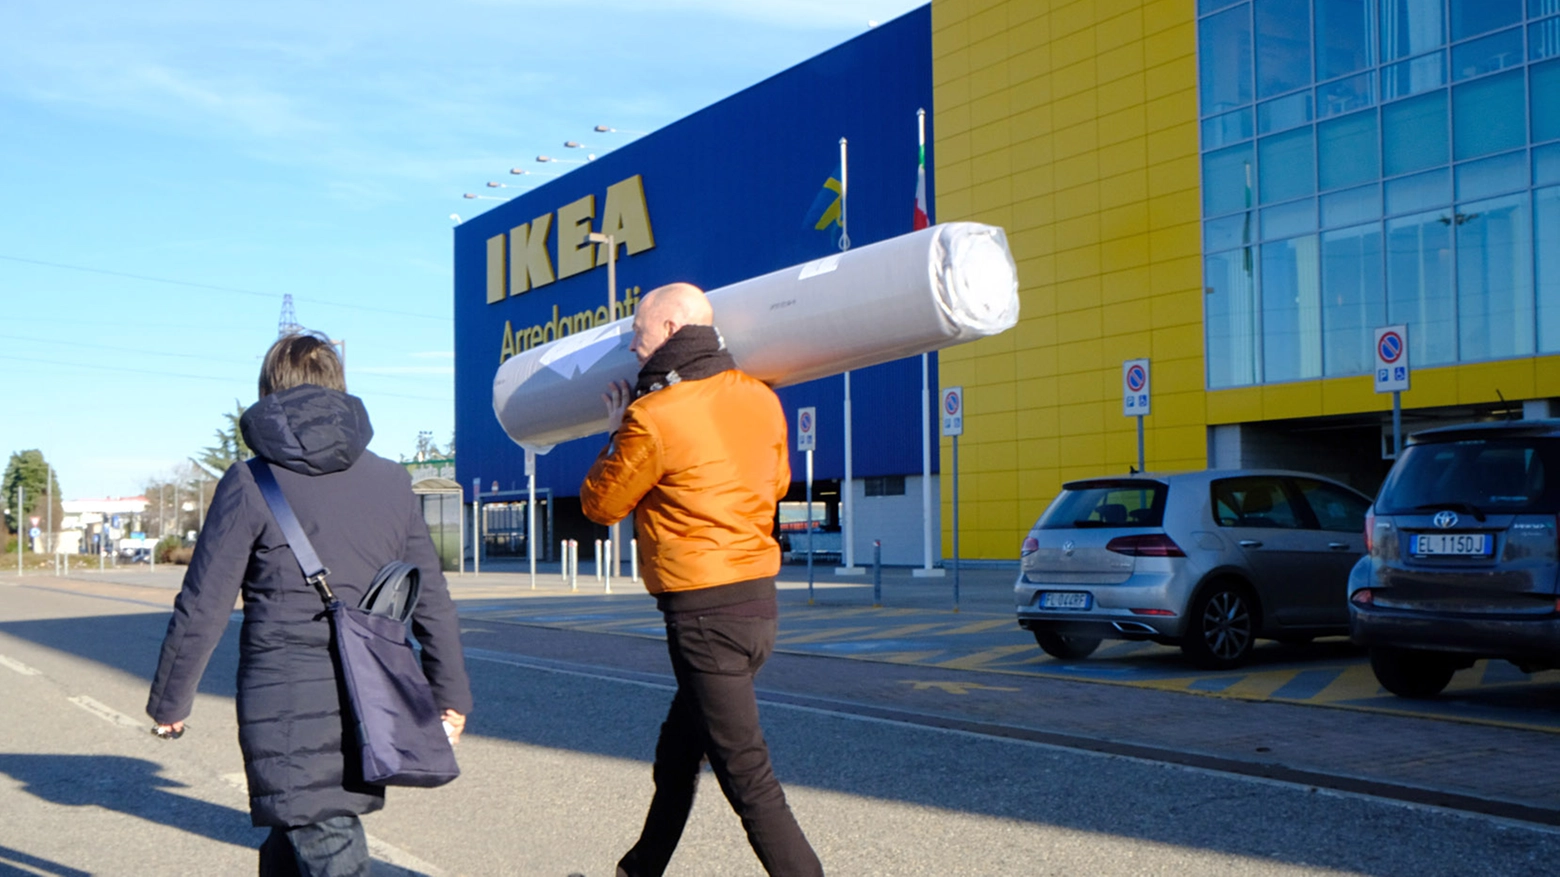 L'Ikea di Corsico